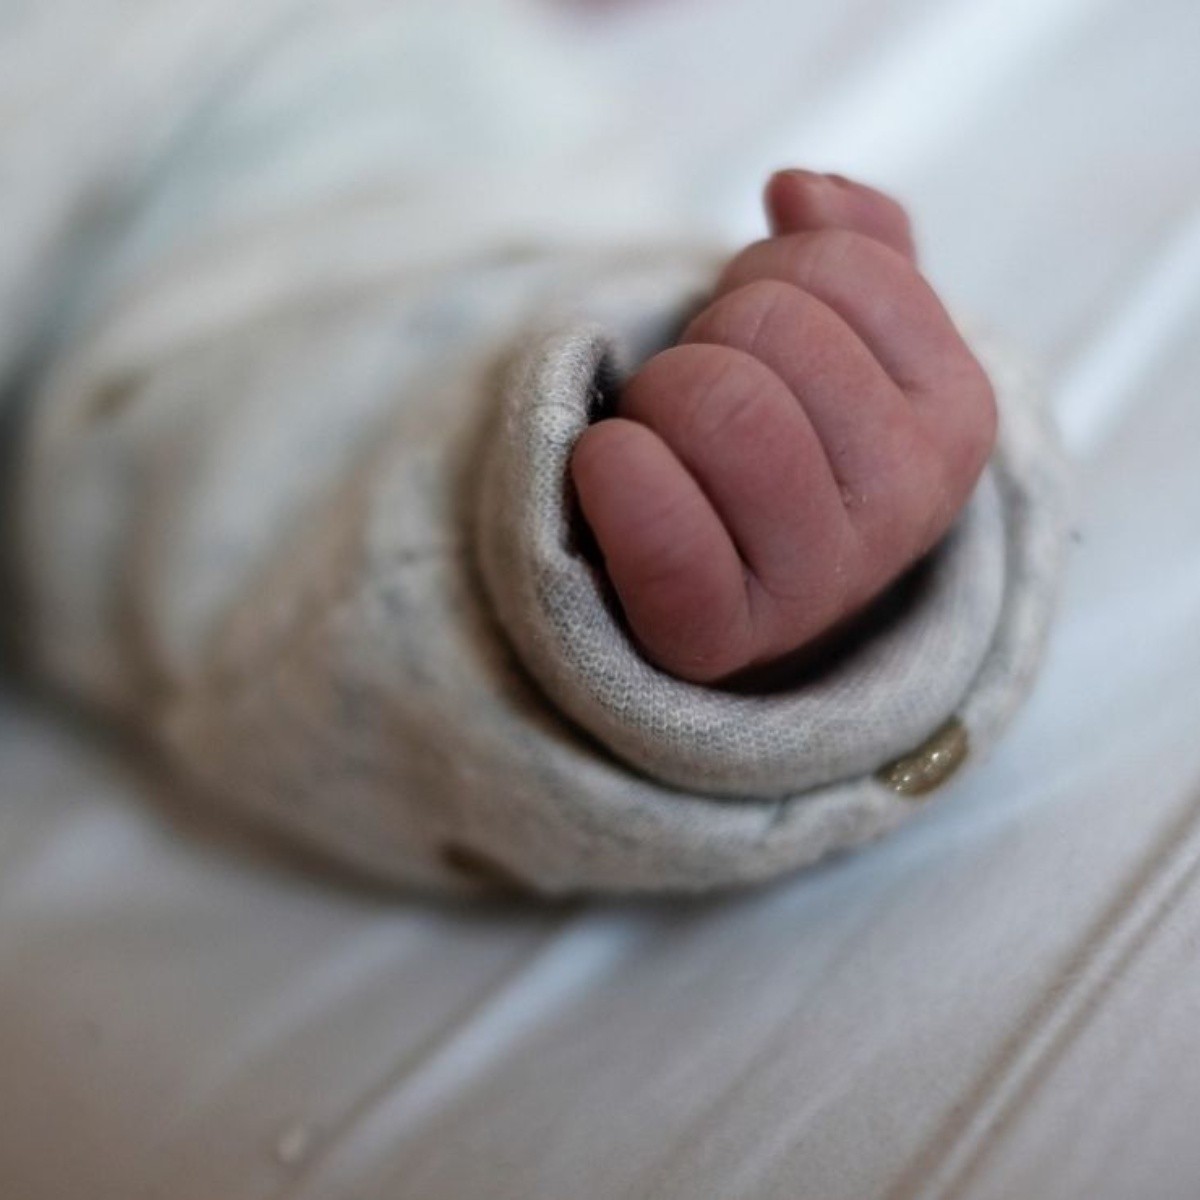 bebé de 5 meses muere de hambre y falta de cuidados en durango